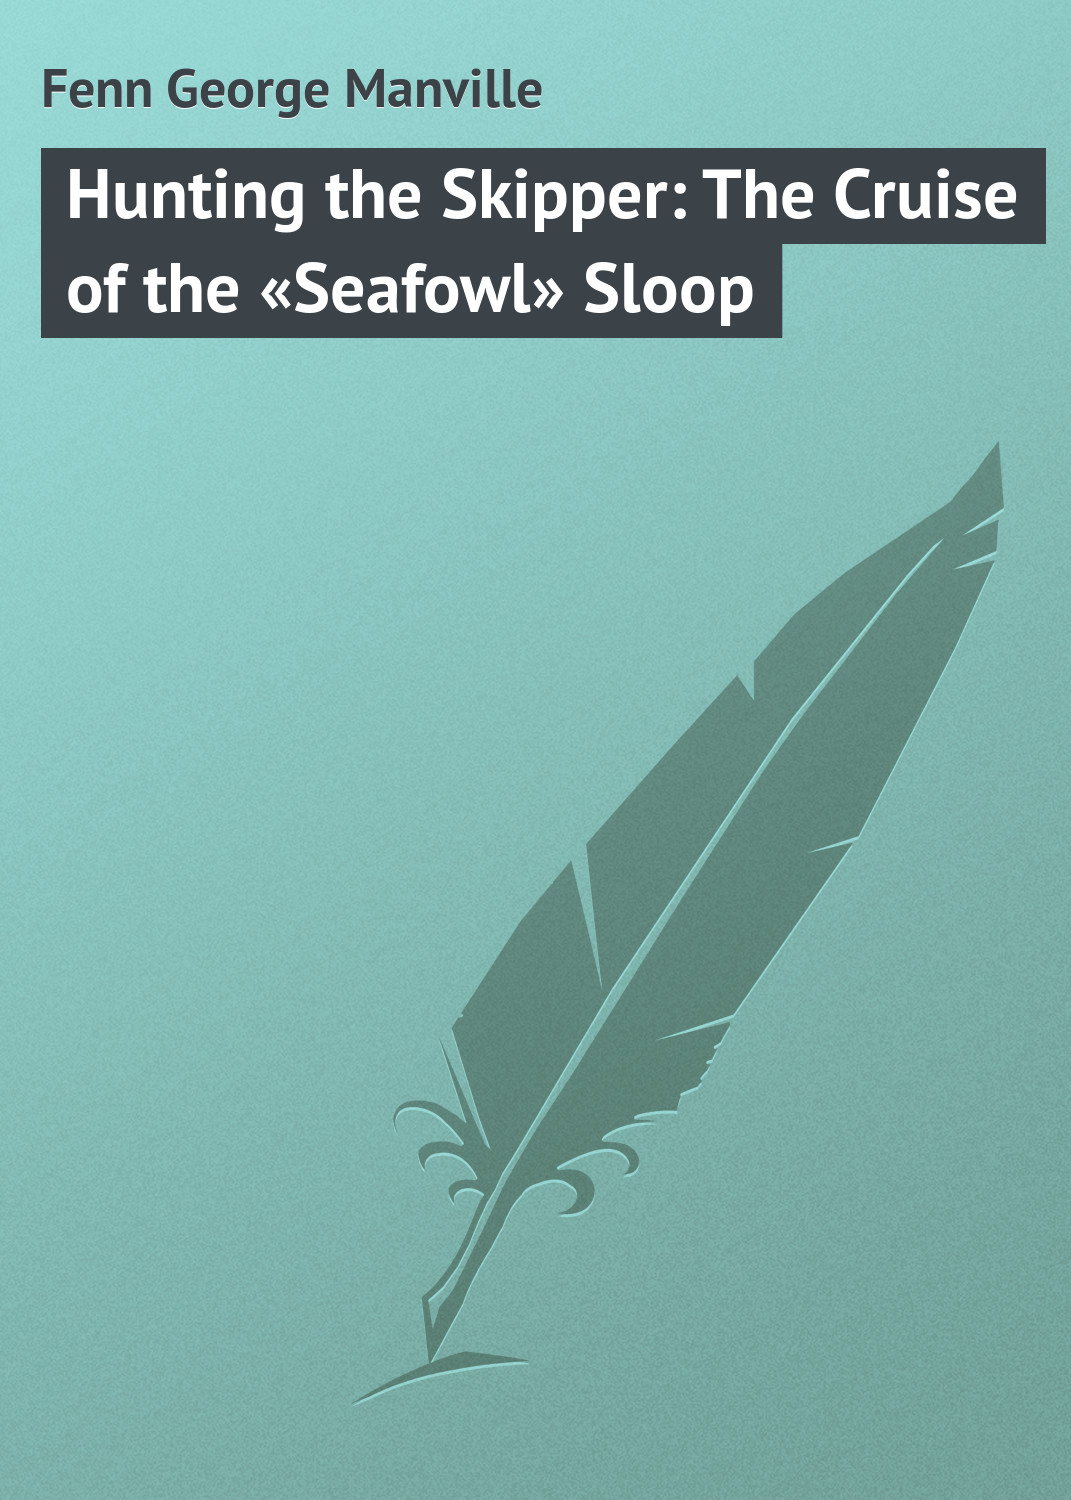 Книга Hunting the Skipper: The Cruise of the «Seafowl» Sloop из серии , созданная George Fenn, может относится к жанру Зарубежная классика, Зарубежные детские книги. Стоимость электронной книги Hunting the Skipper: The Cruise of the «Seafowl» Sloop с идентификатором 23166211 составляет 5.99 руб.